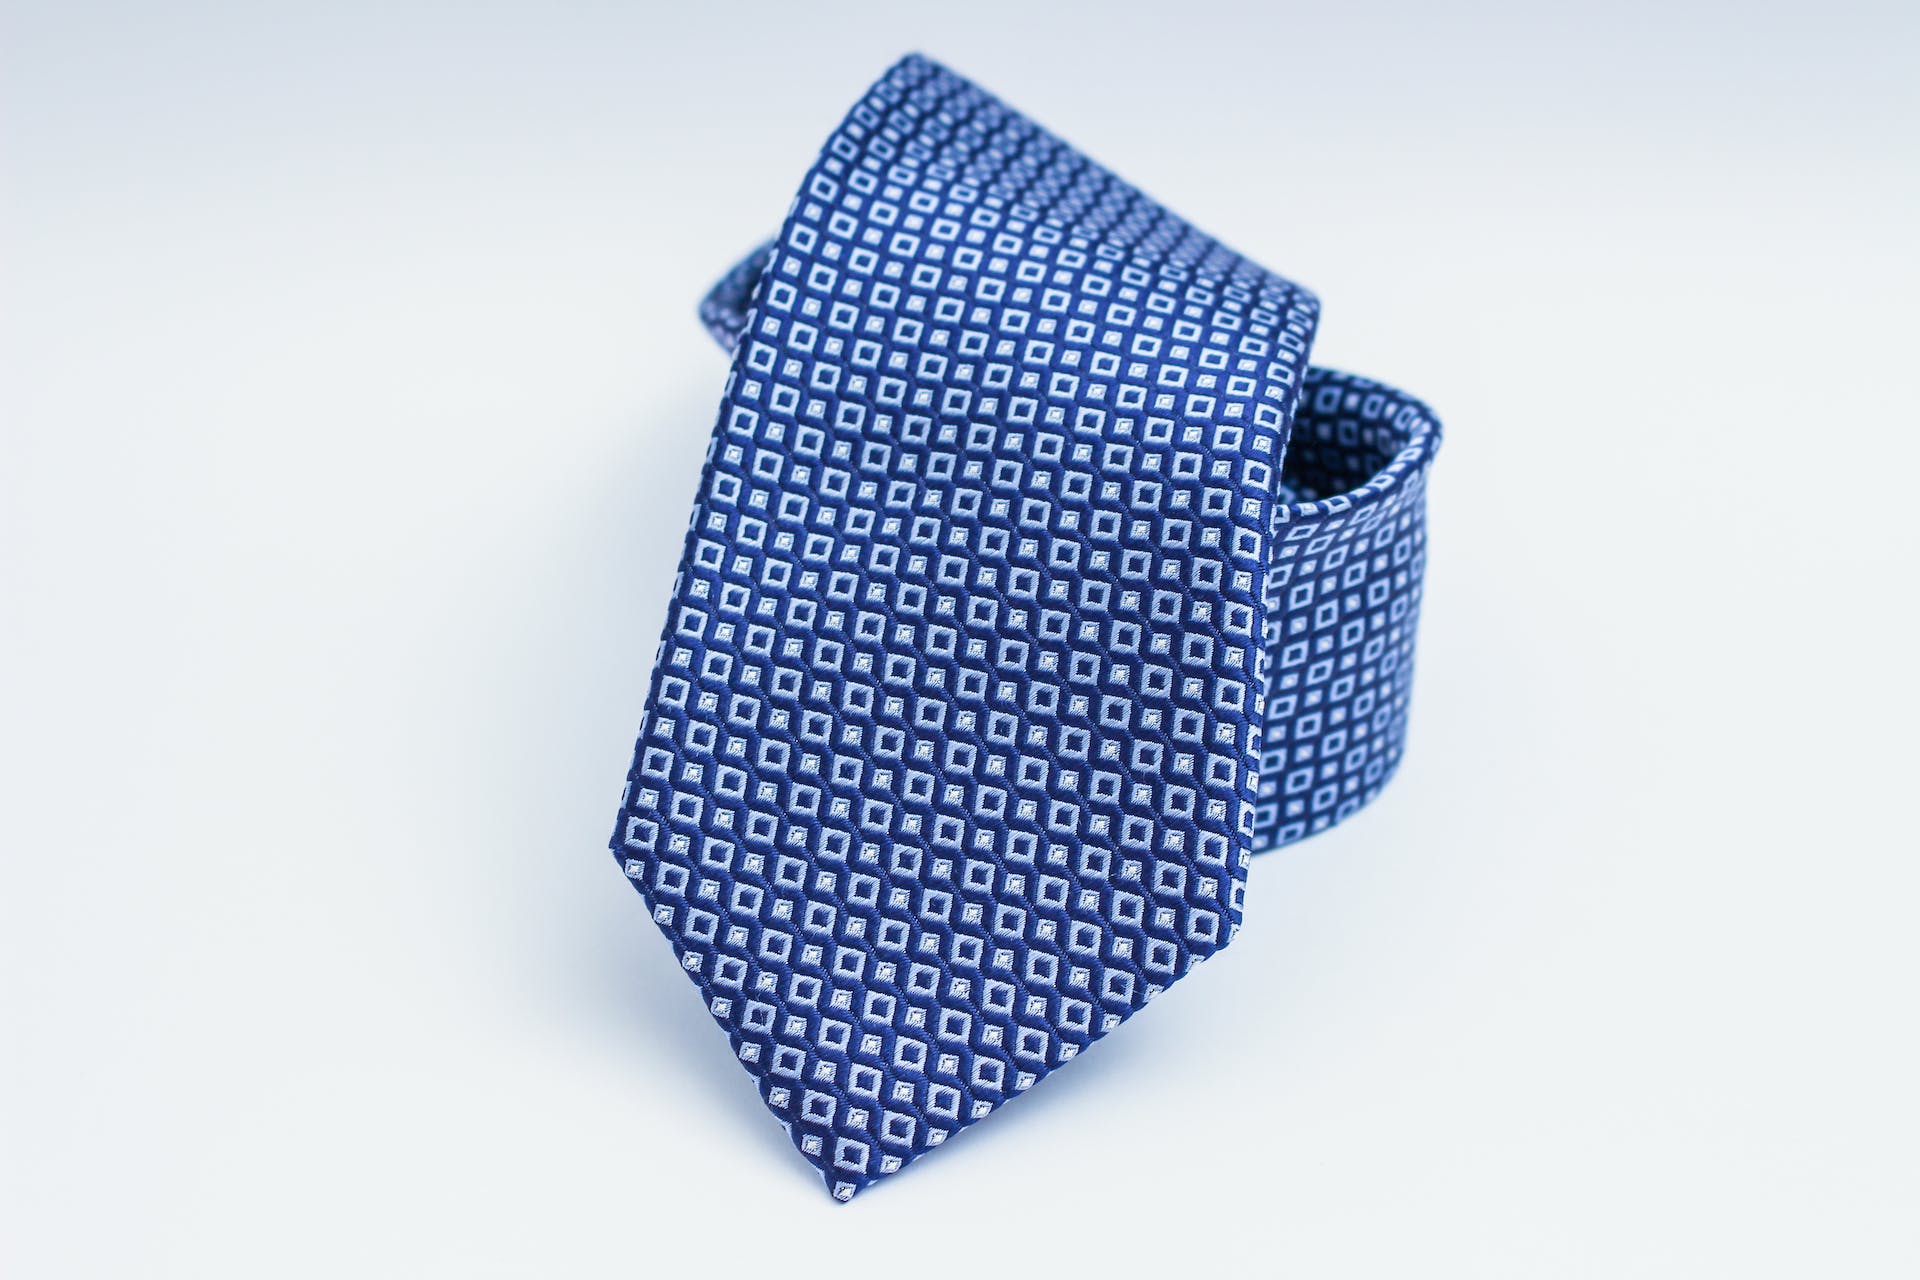 Men's blue tie | Source: Pexels